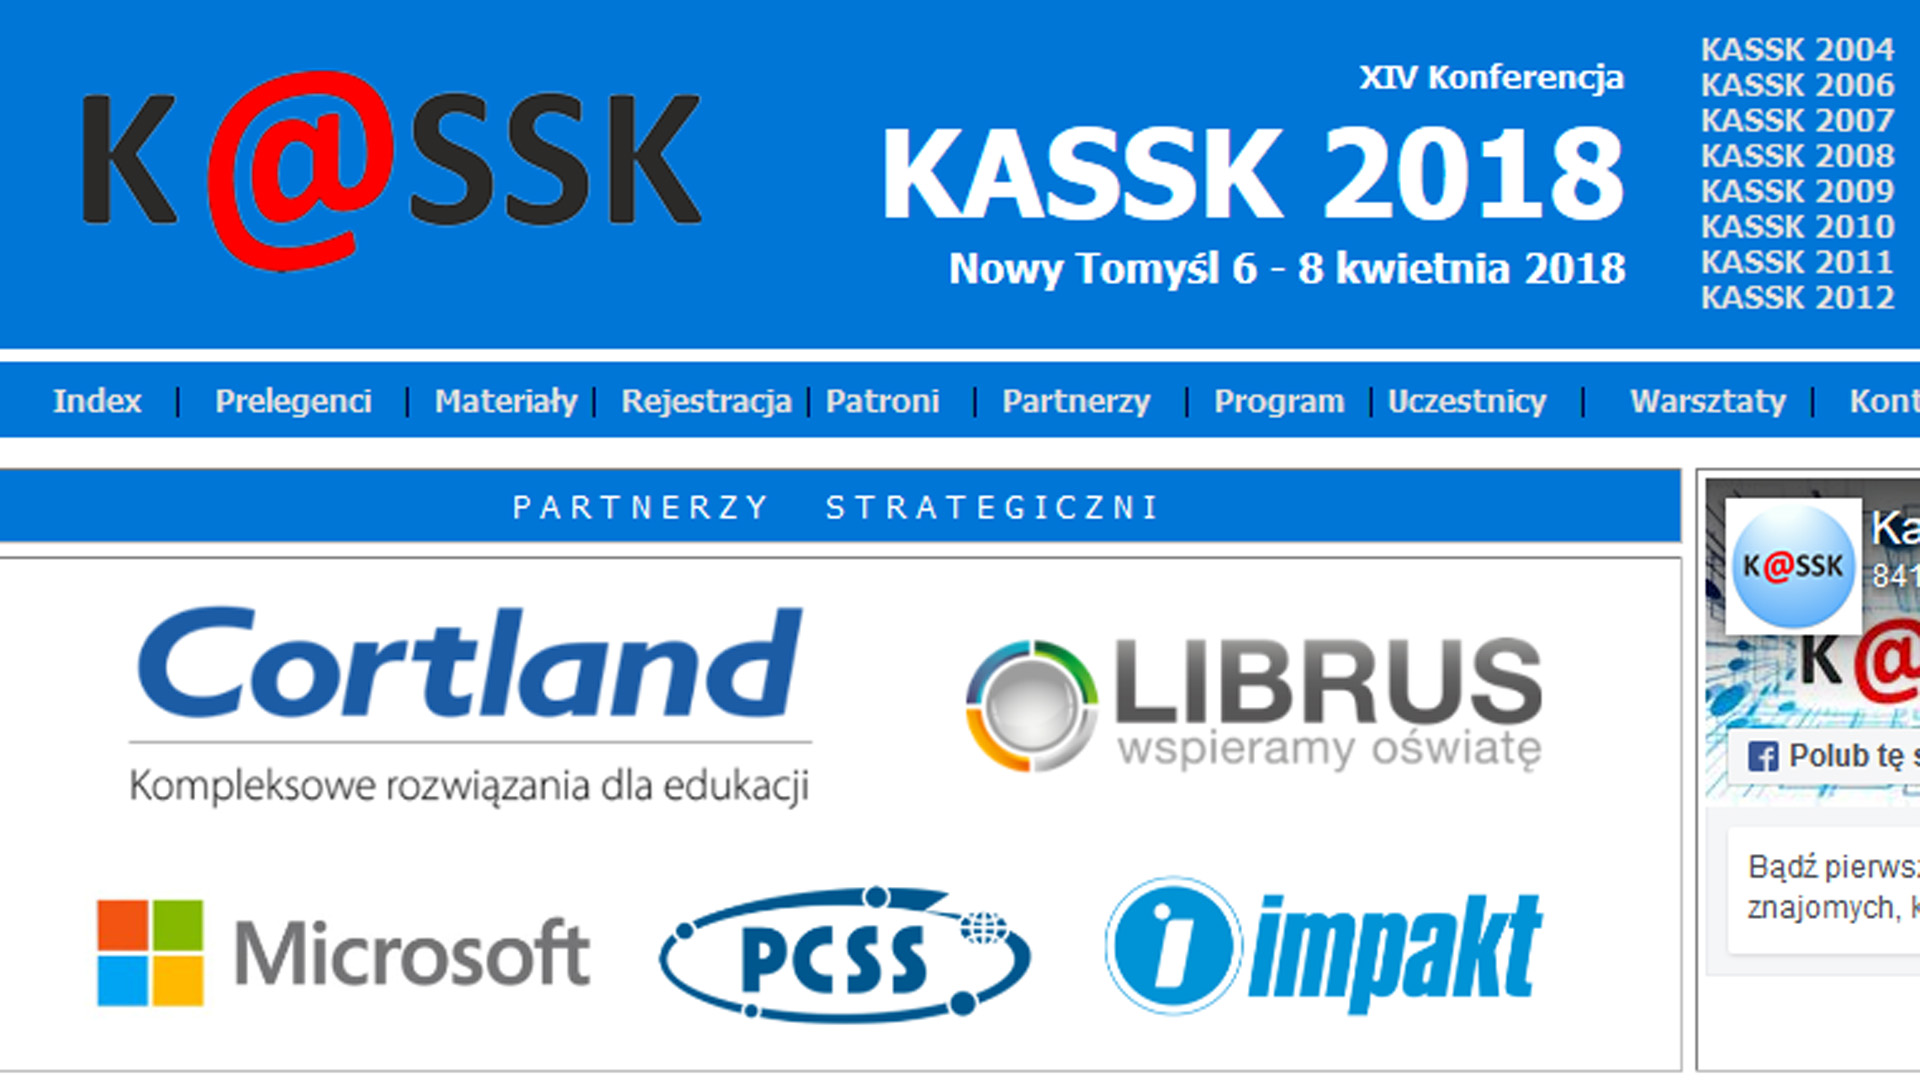 PCSS partnerem technologicznym KASSK 2018